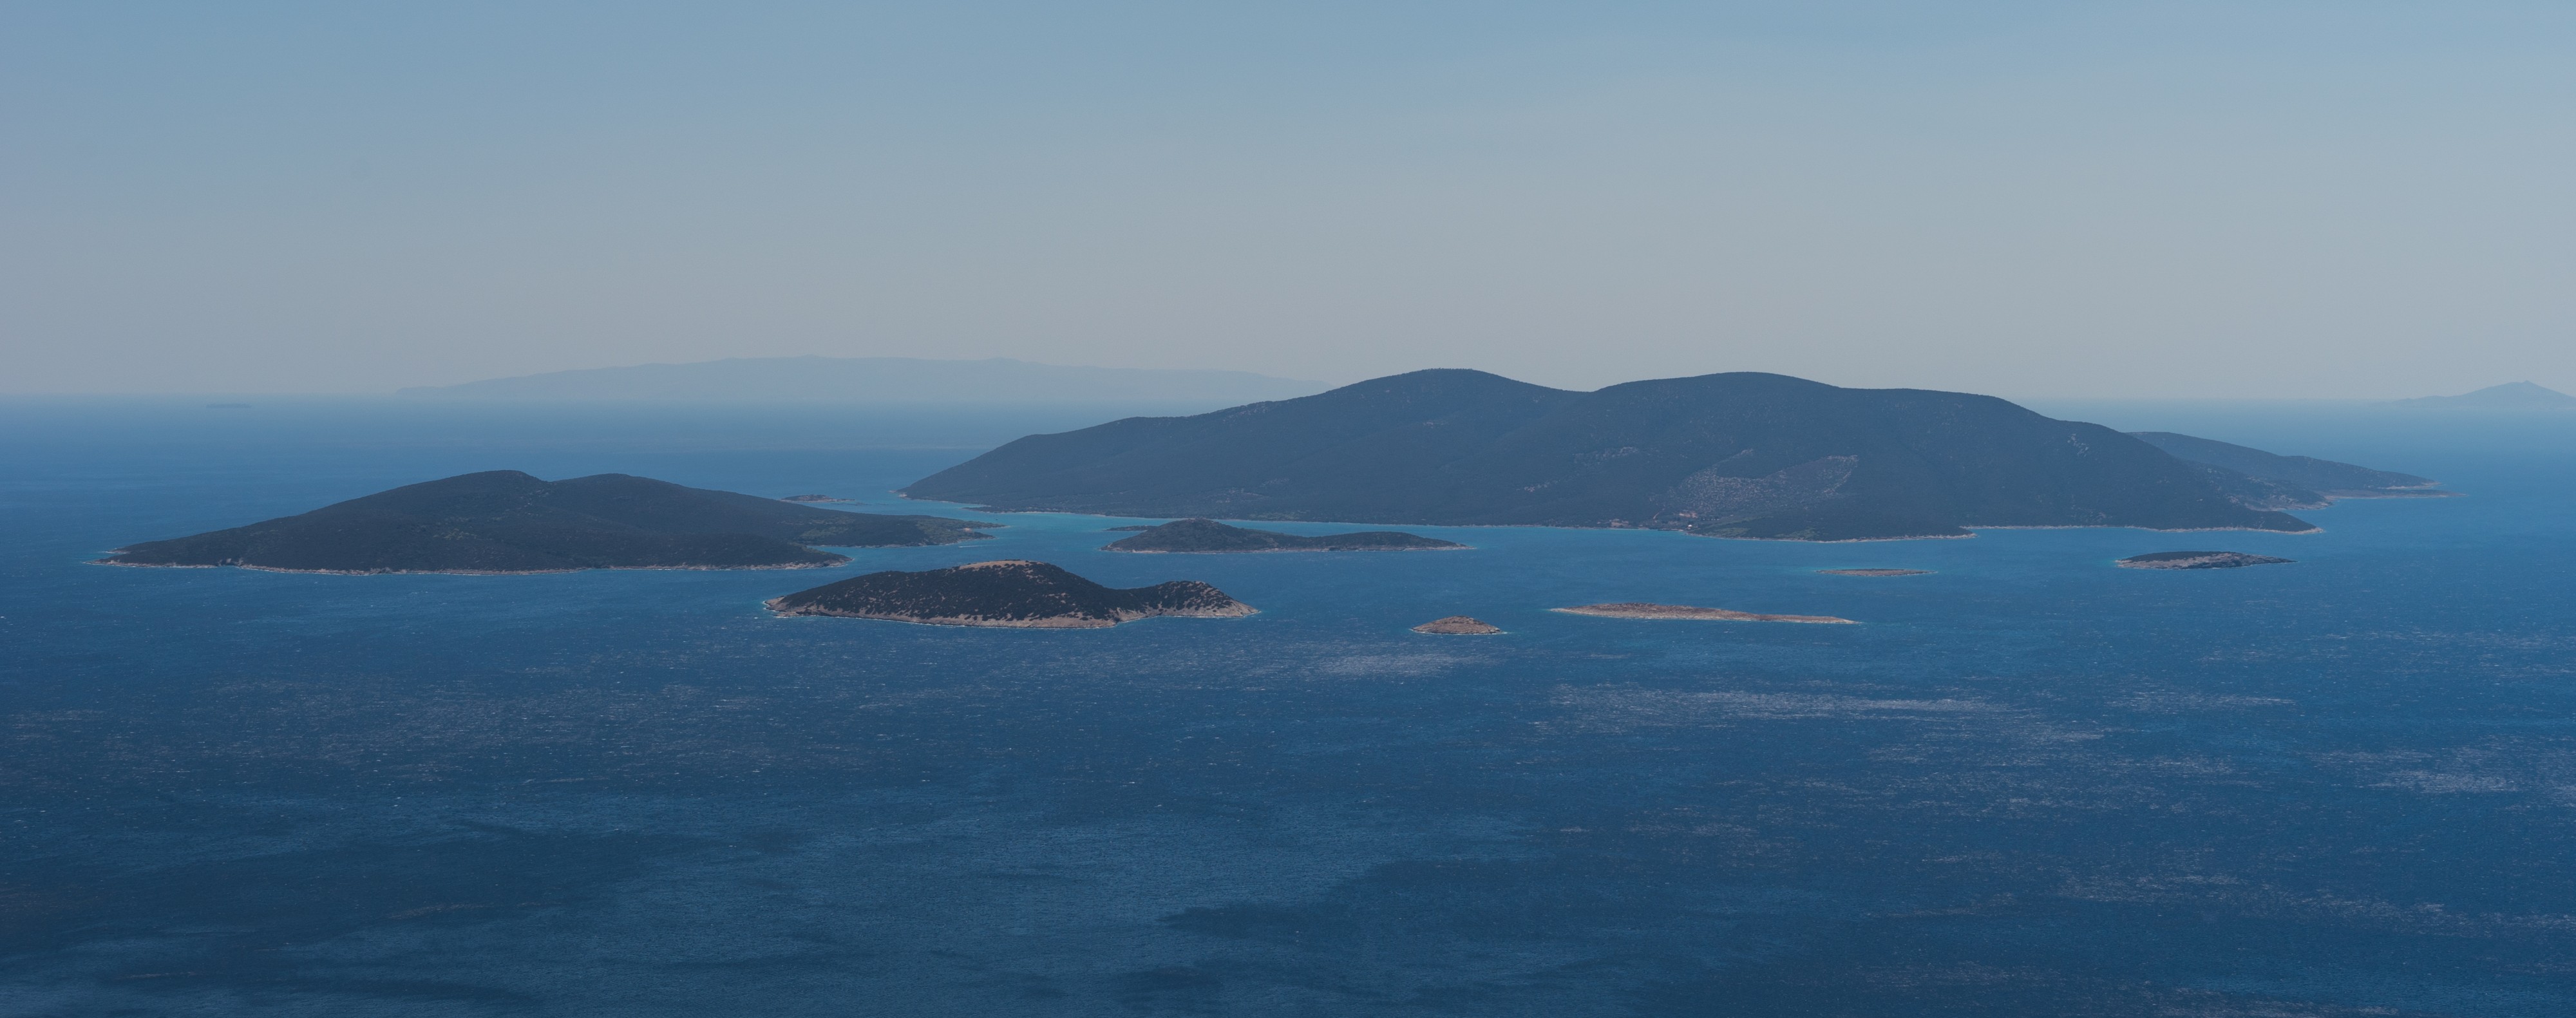 Petalii archipelago Marmari Euboea Greece